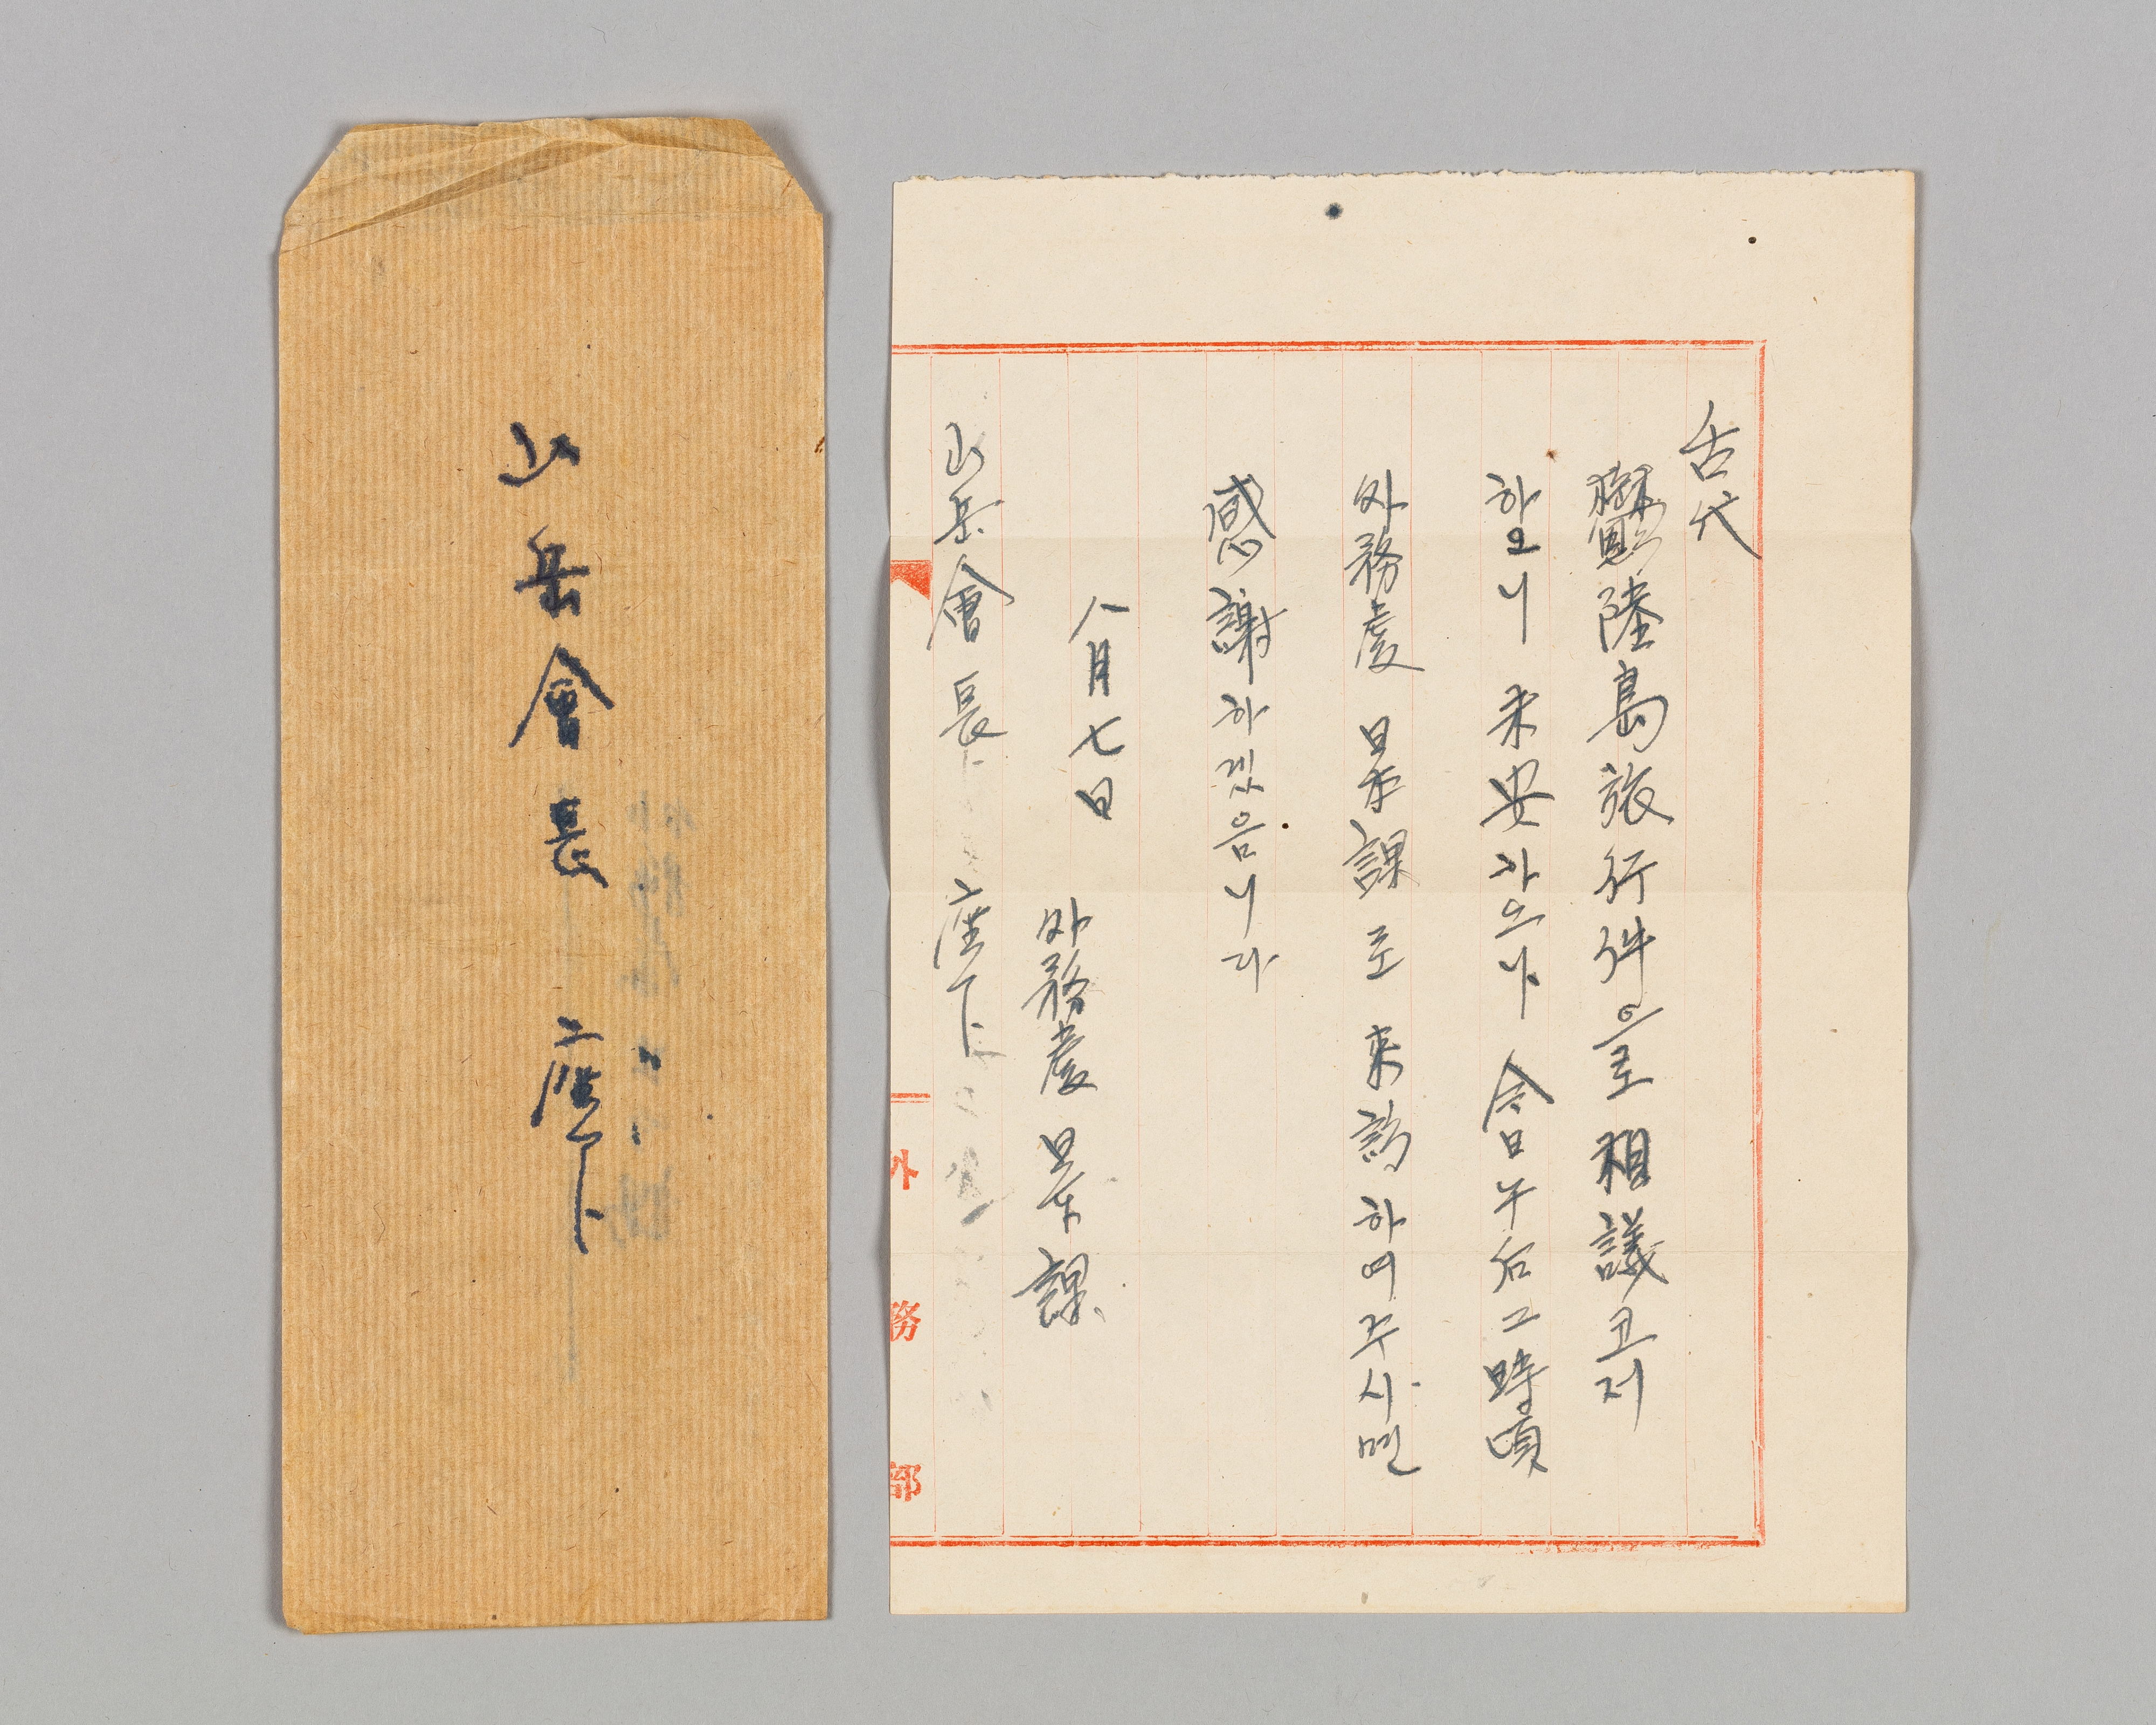 외무처 일본과에서 독도에 가려는 조선산악회장에게 보낸 편지. 동북아역사재단 제공